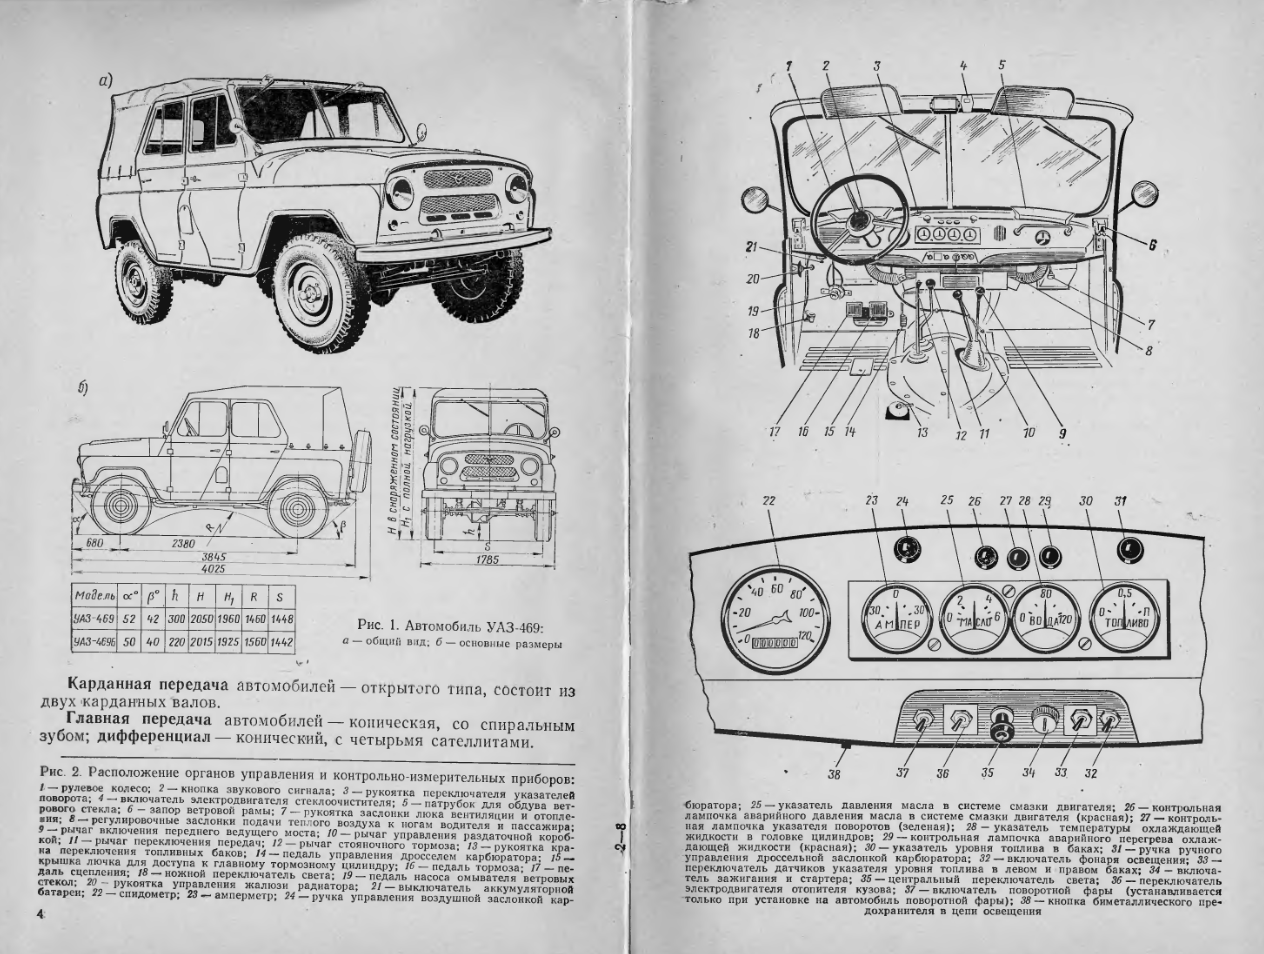 УАЗ-469. Автомобили УАЗ-469 и УАЗ-469Б. Техническое обслуживание и ремонт. 1978